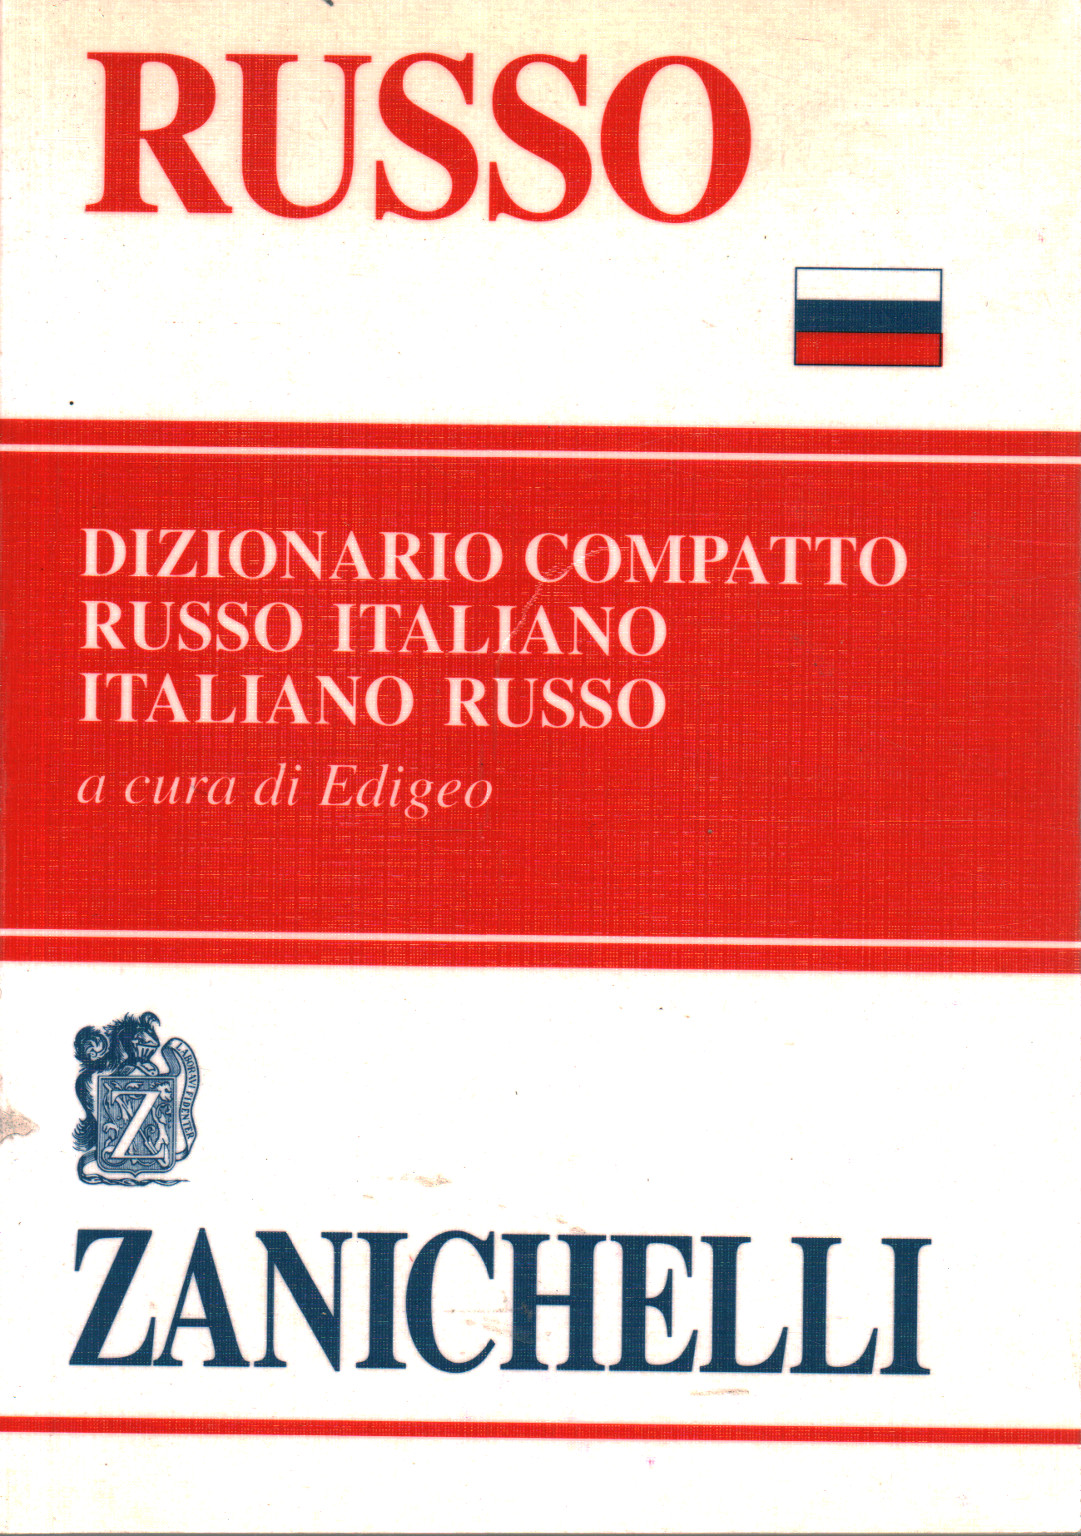 Dictionnaire Compact. Le russe l'italien l'italien russe s.un.